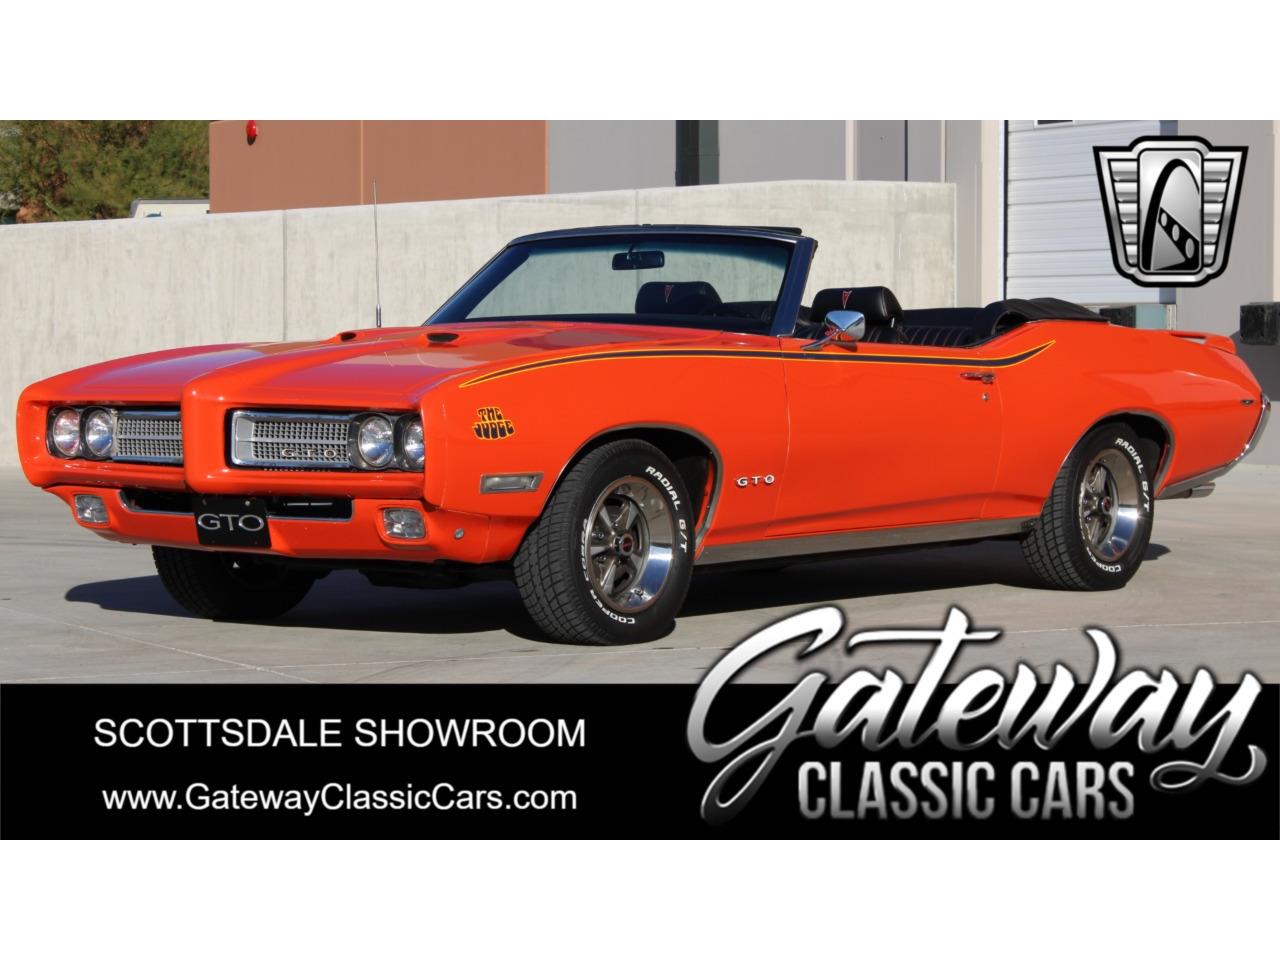 For Sale: 1969 Pontiac GTO in O'Fallon, Illinois for sale in O Fallon, IL